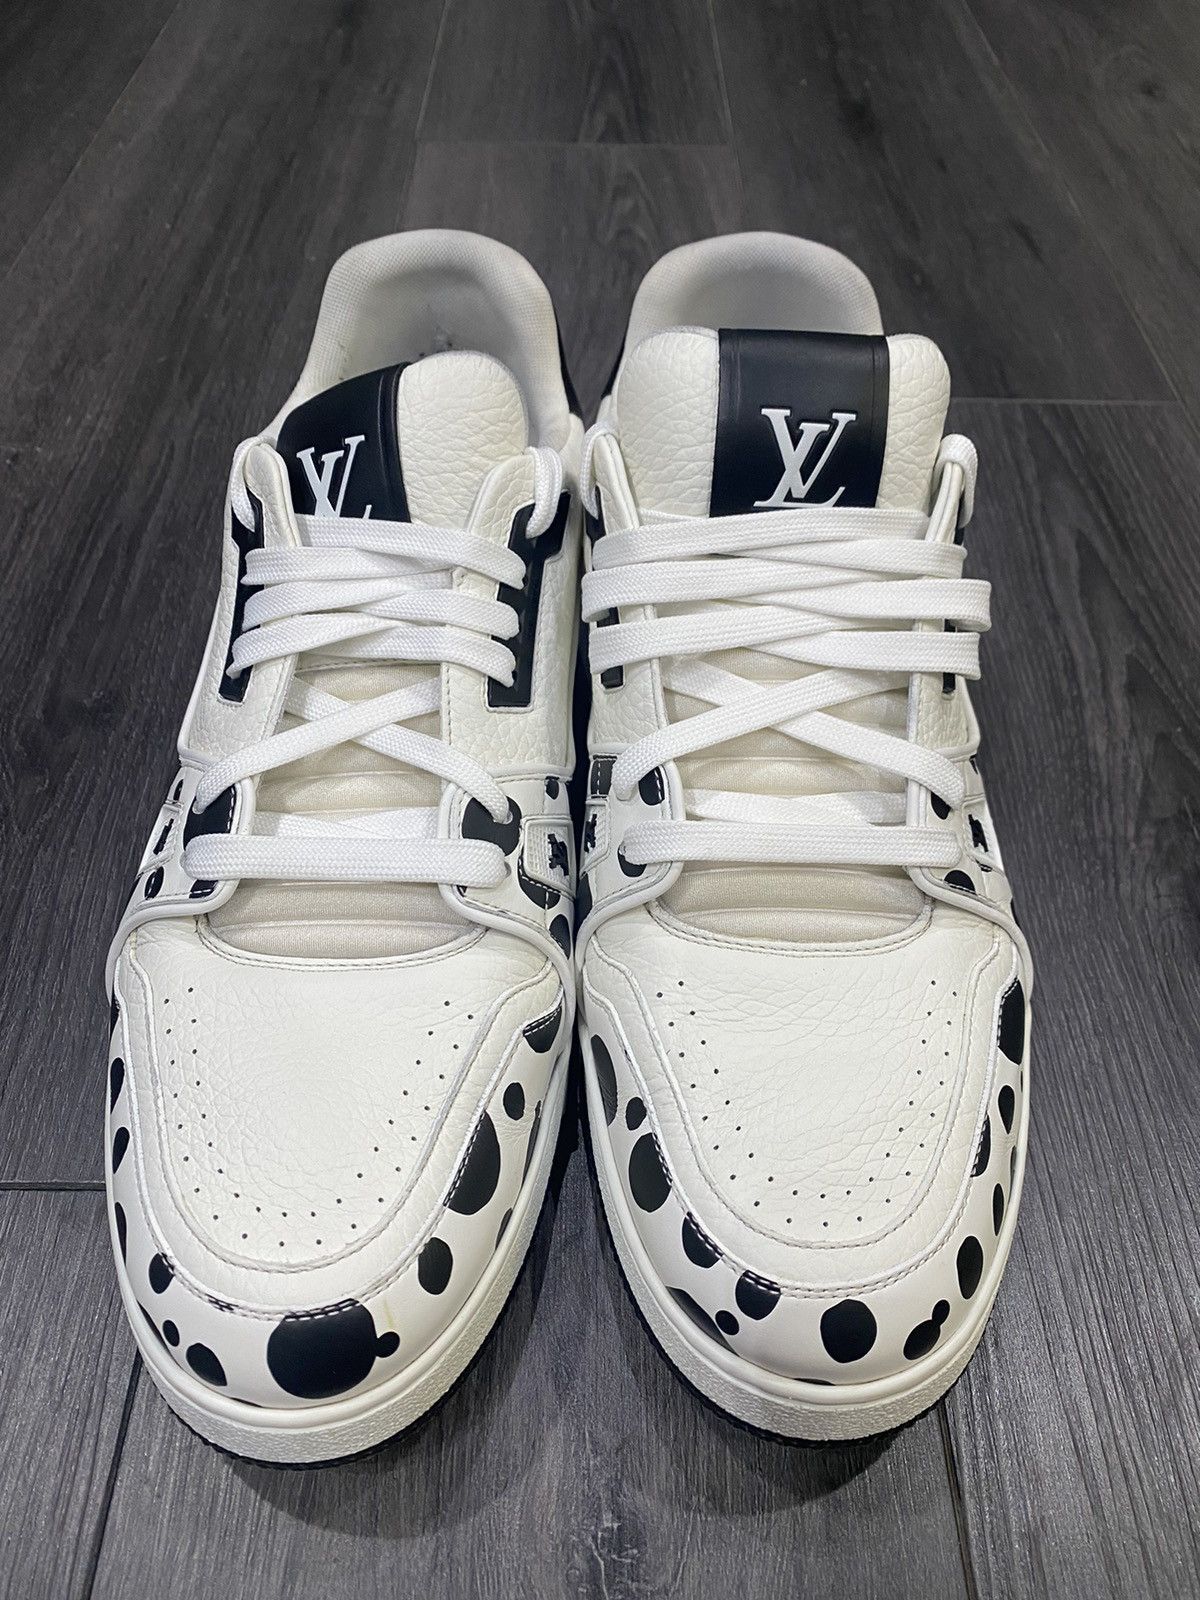 Louis Vuitton X Supreme White & Red Monogram Sneaker LVsz 11 = US 12